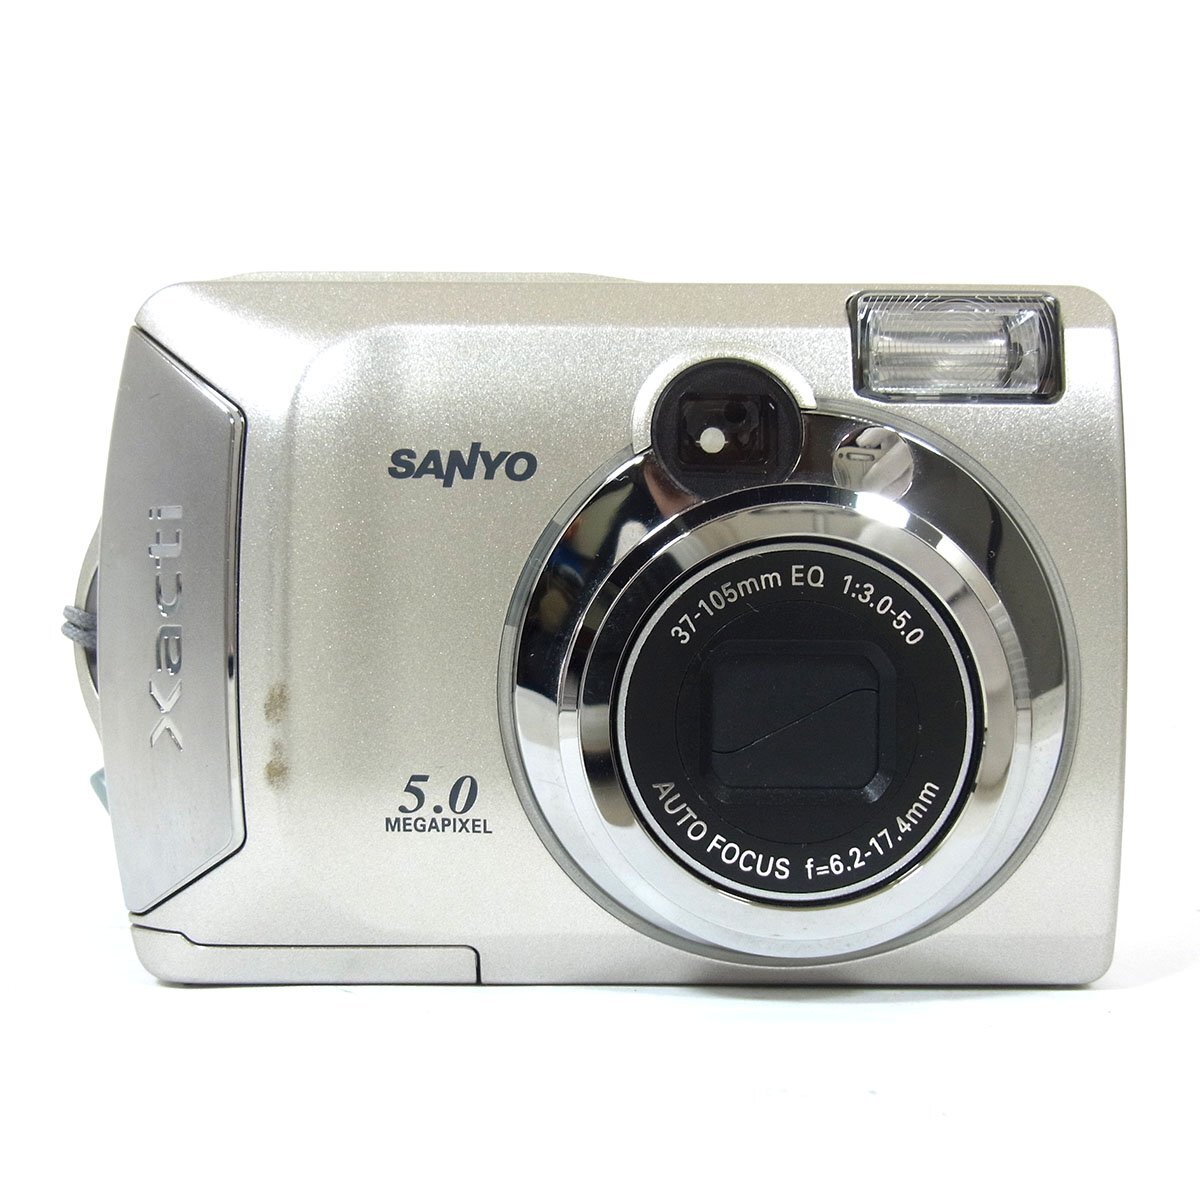  Sanyo Sanyo Xacti DSC-S5 type цифровая камера оттенок серебра электризация простой рабочее состояние подтверждено SANYO *